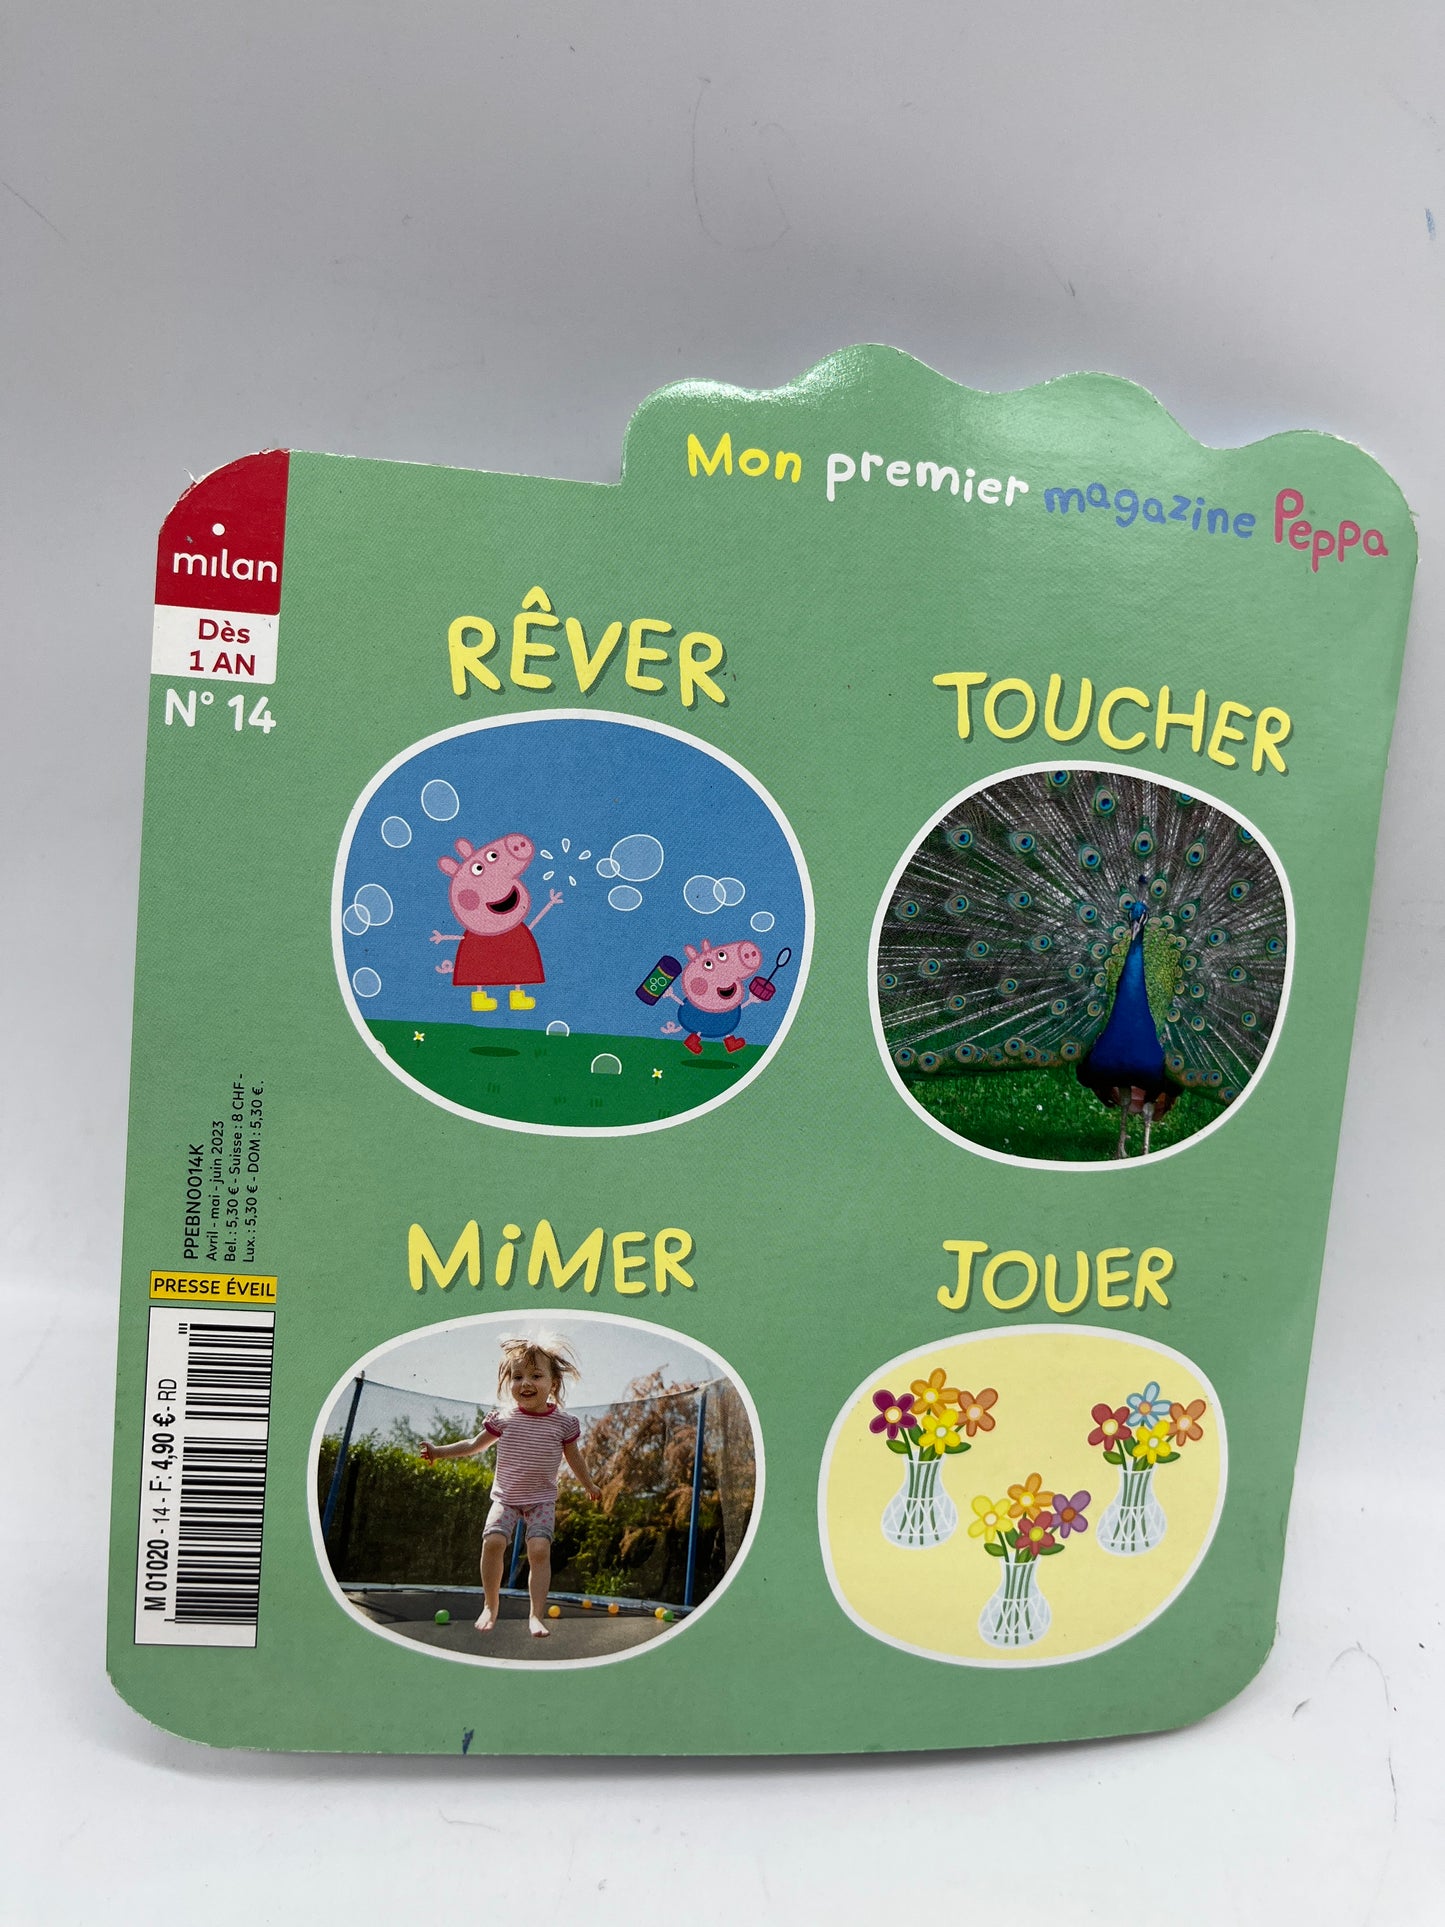 Livre d’activités Magazine À petit pas avec Peppa pig dès 1 ans avec gommettes jeux histoire Neuf